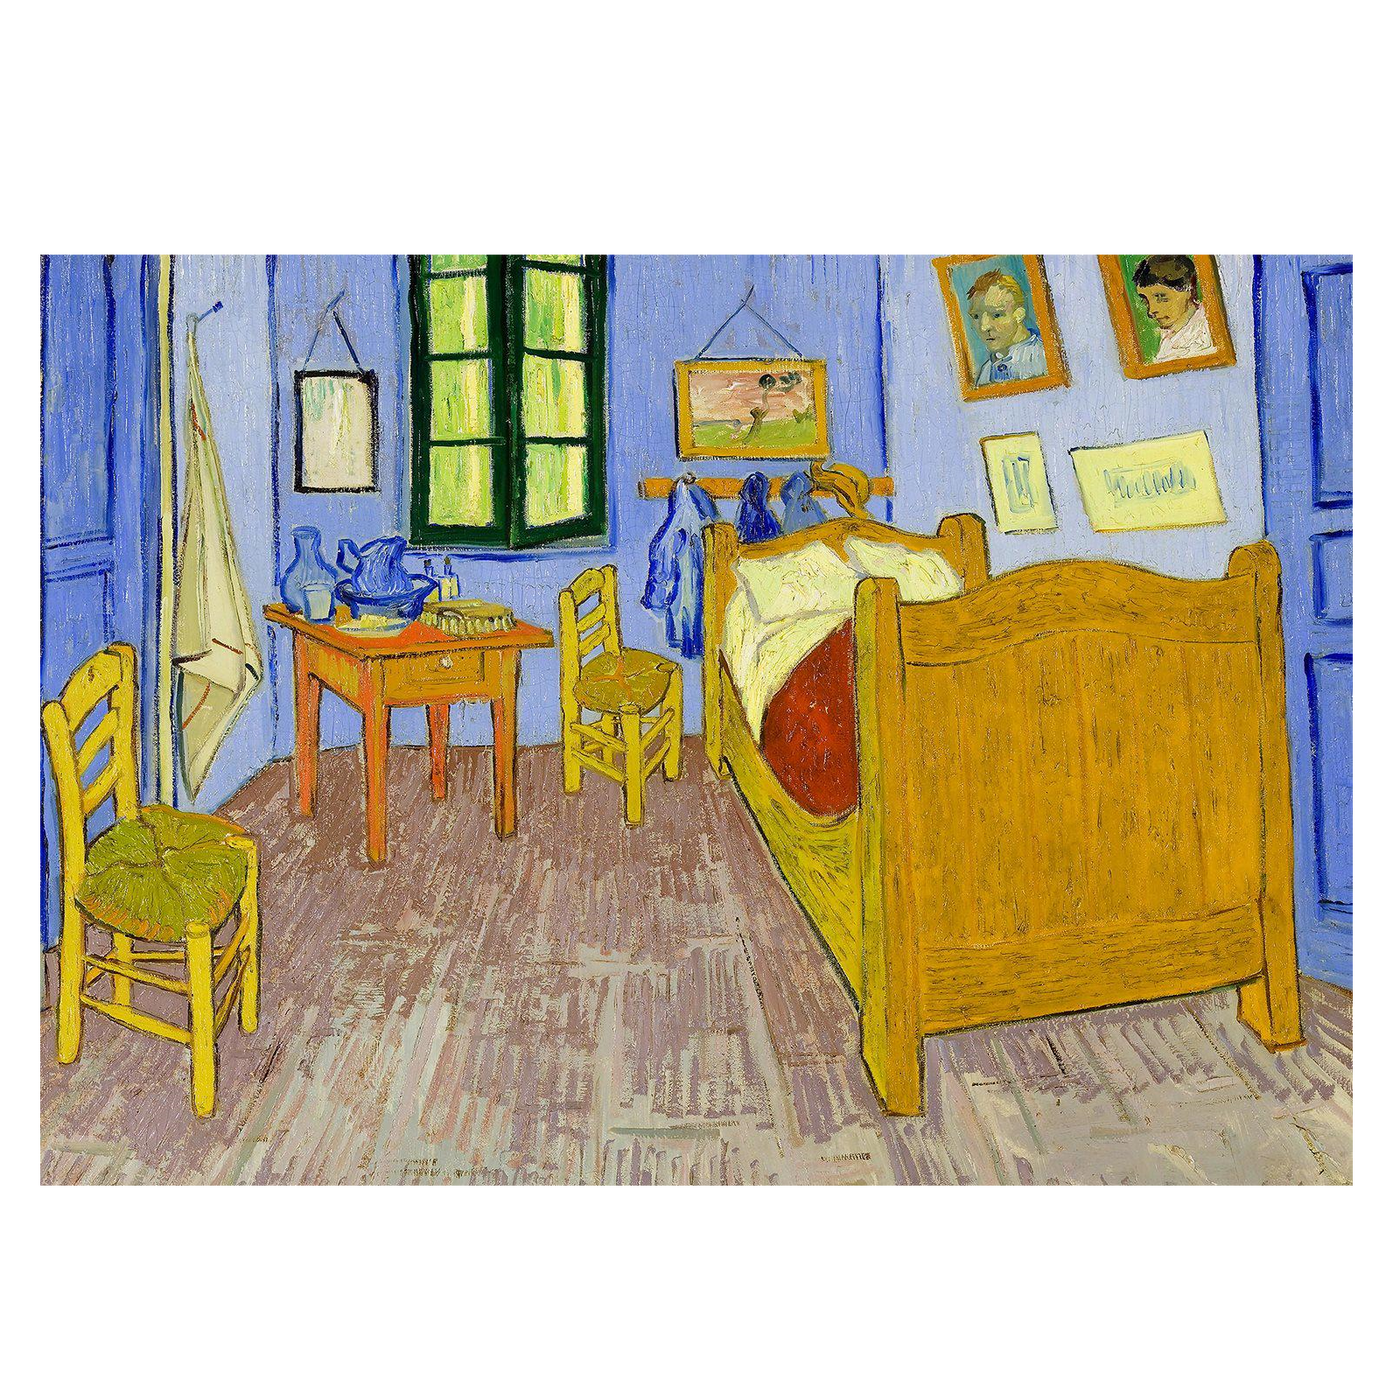 Van Gogh: Bedroom in Arles